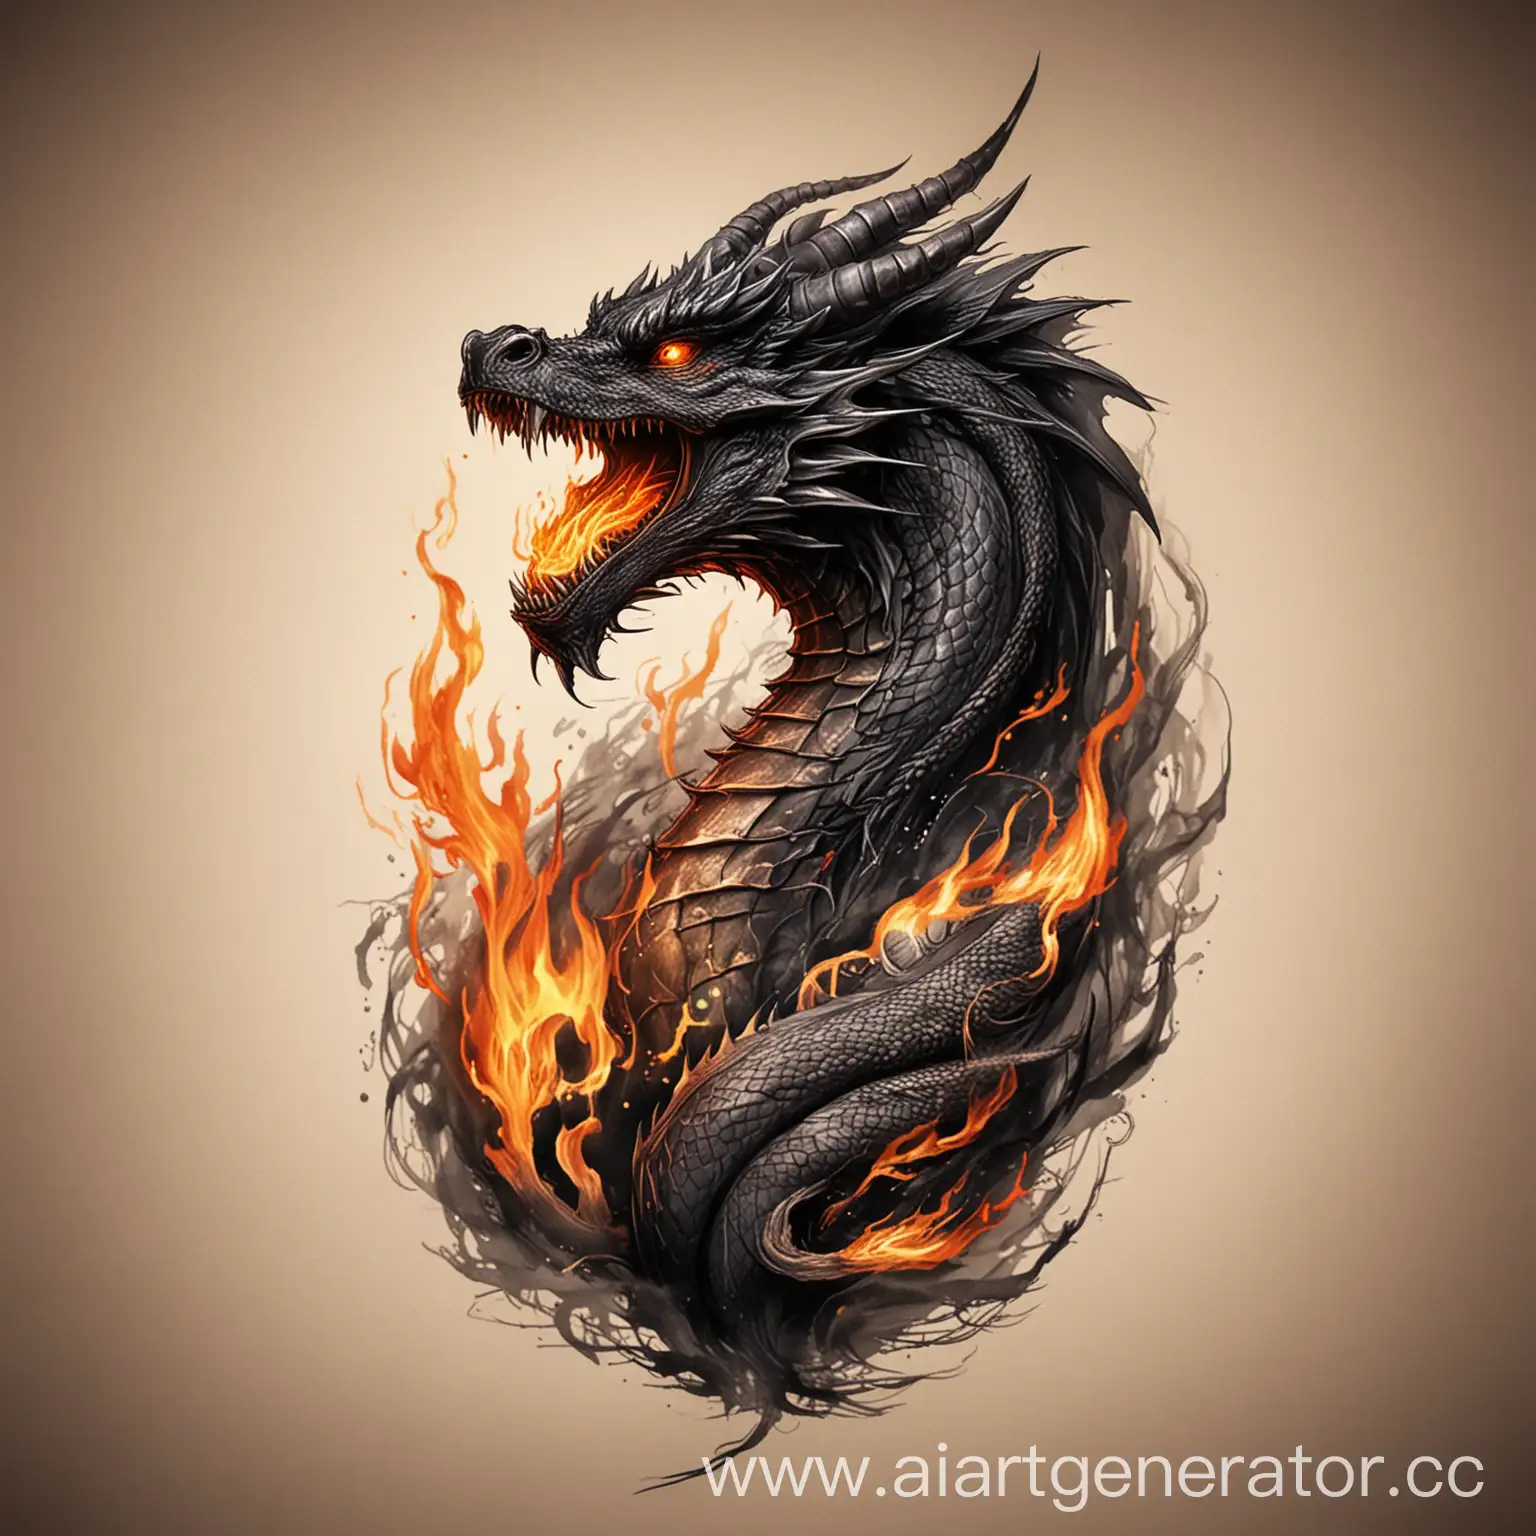 огромный черный дракон извергает огонь, тату эскиз, портрет дракона